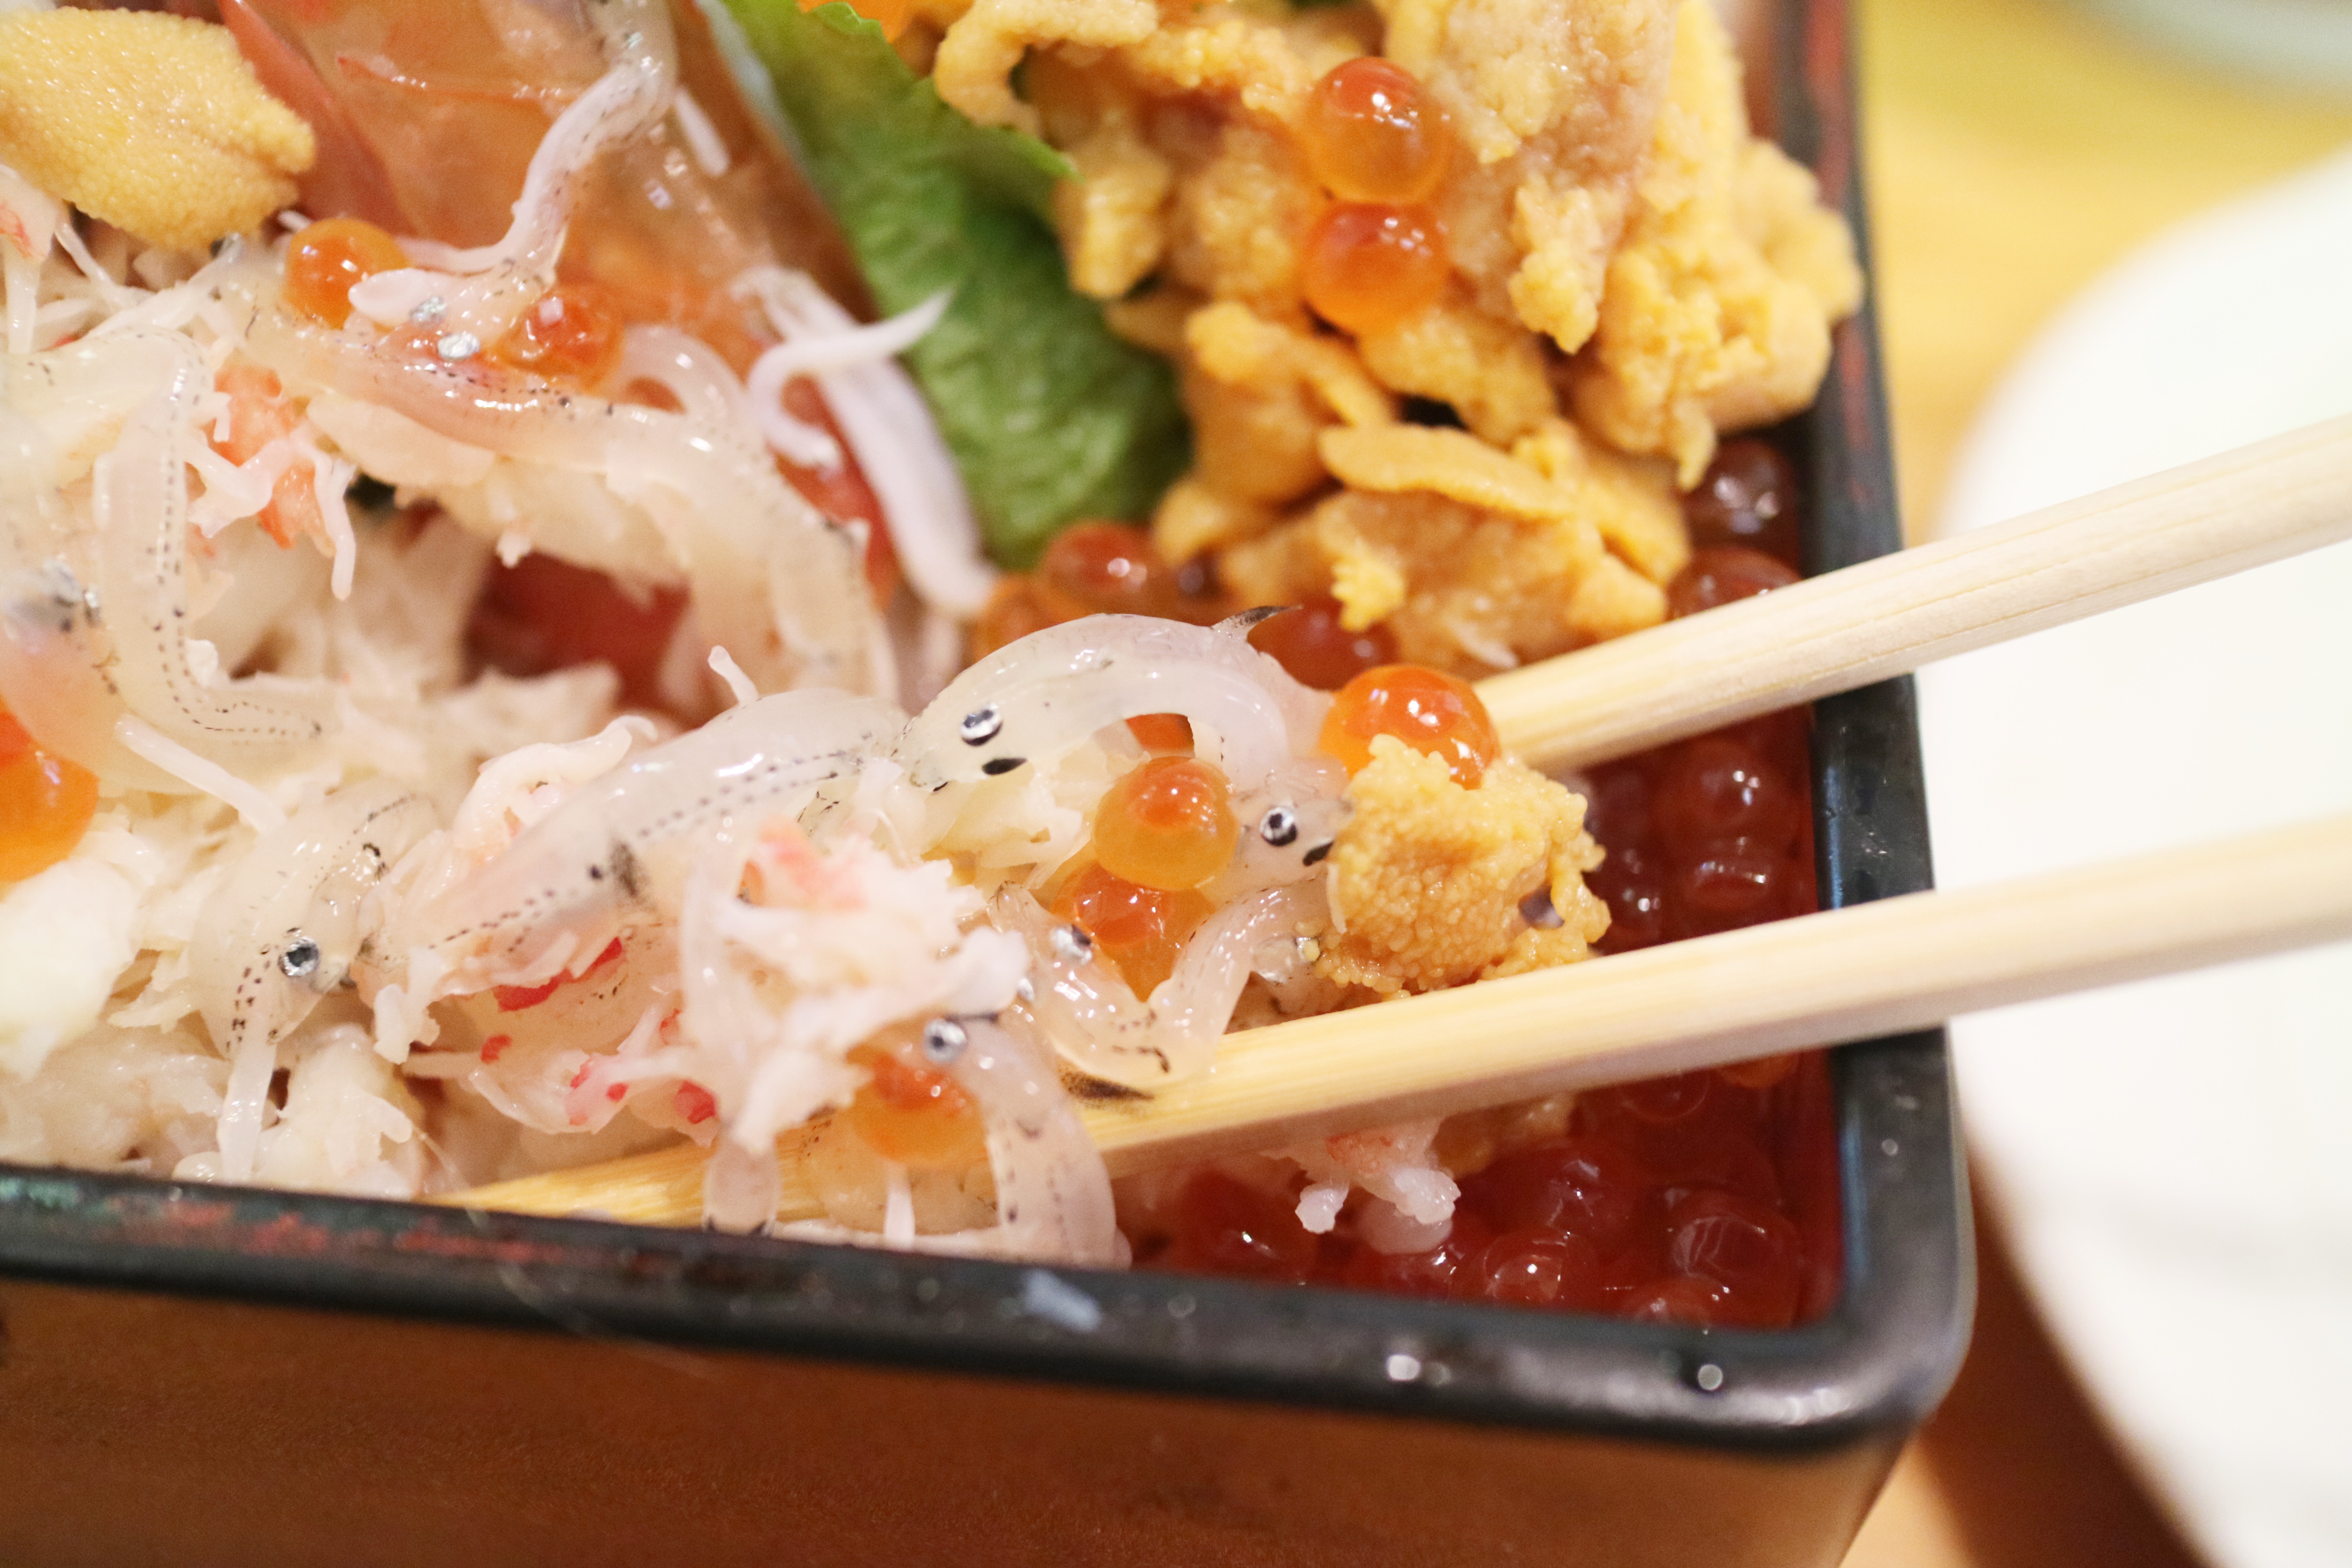 川崎市地方卸売市場南部市場お魚やの市場寿司